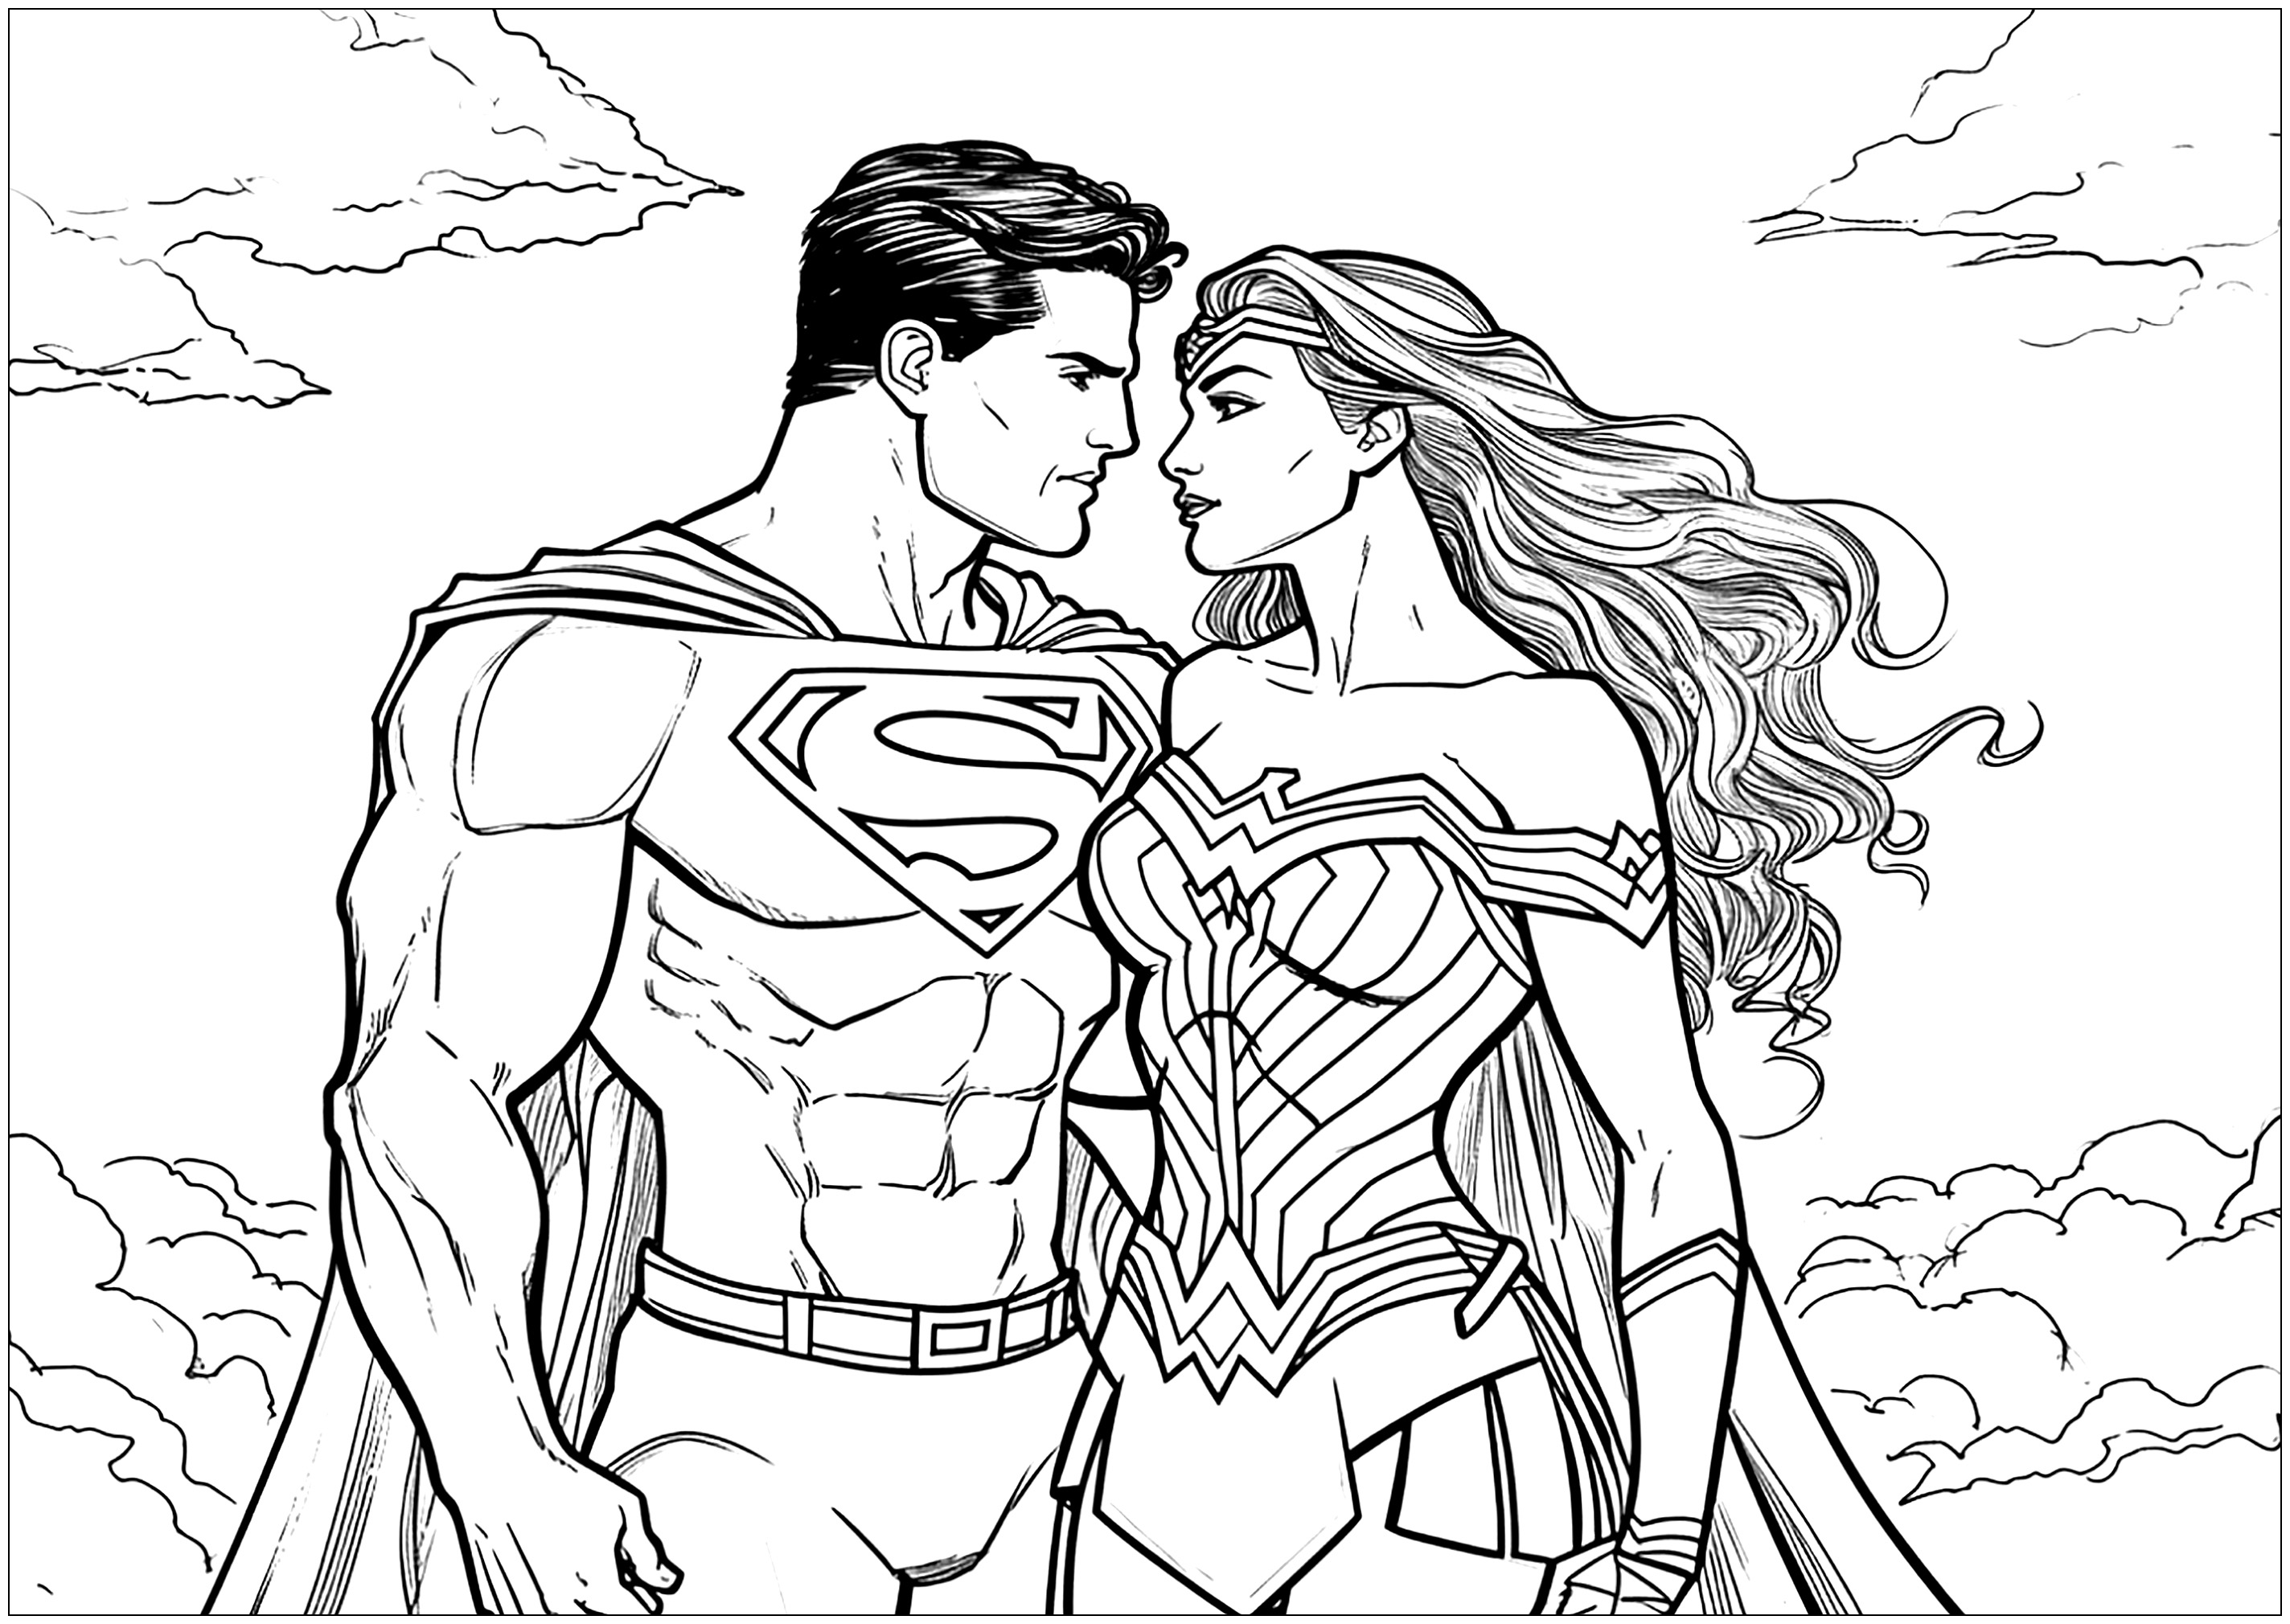 O Super-Homem e a Mulher Maravilha apaixonados. Até os super-heróis se podem apaixonar... Uma página para colorir original para o Dia dos Namorados!